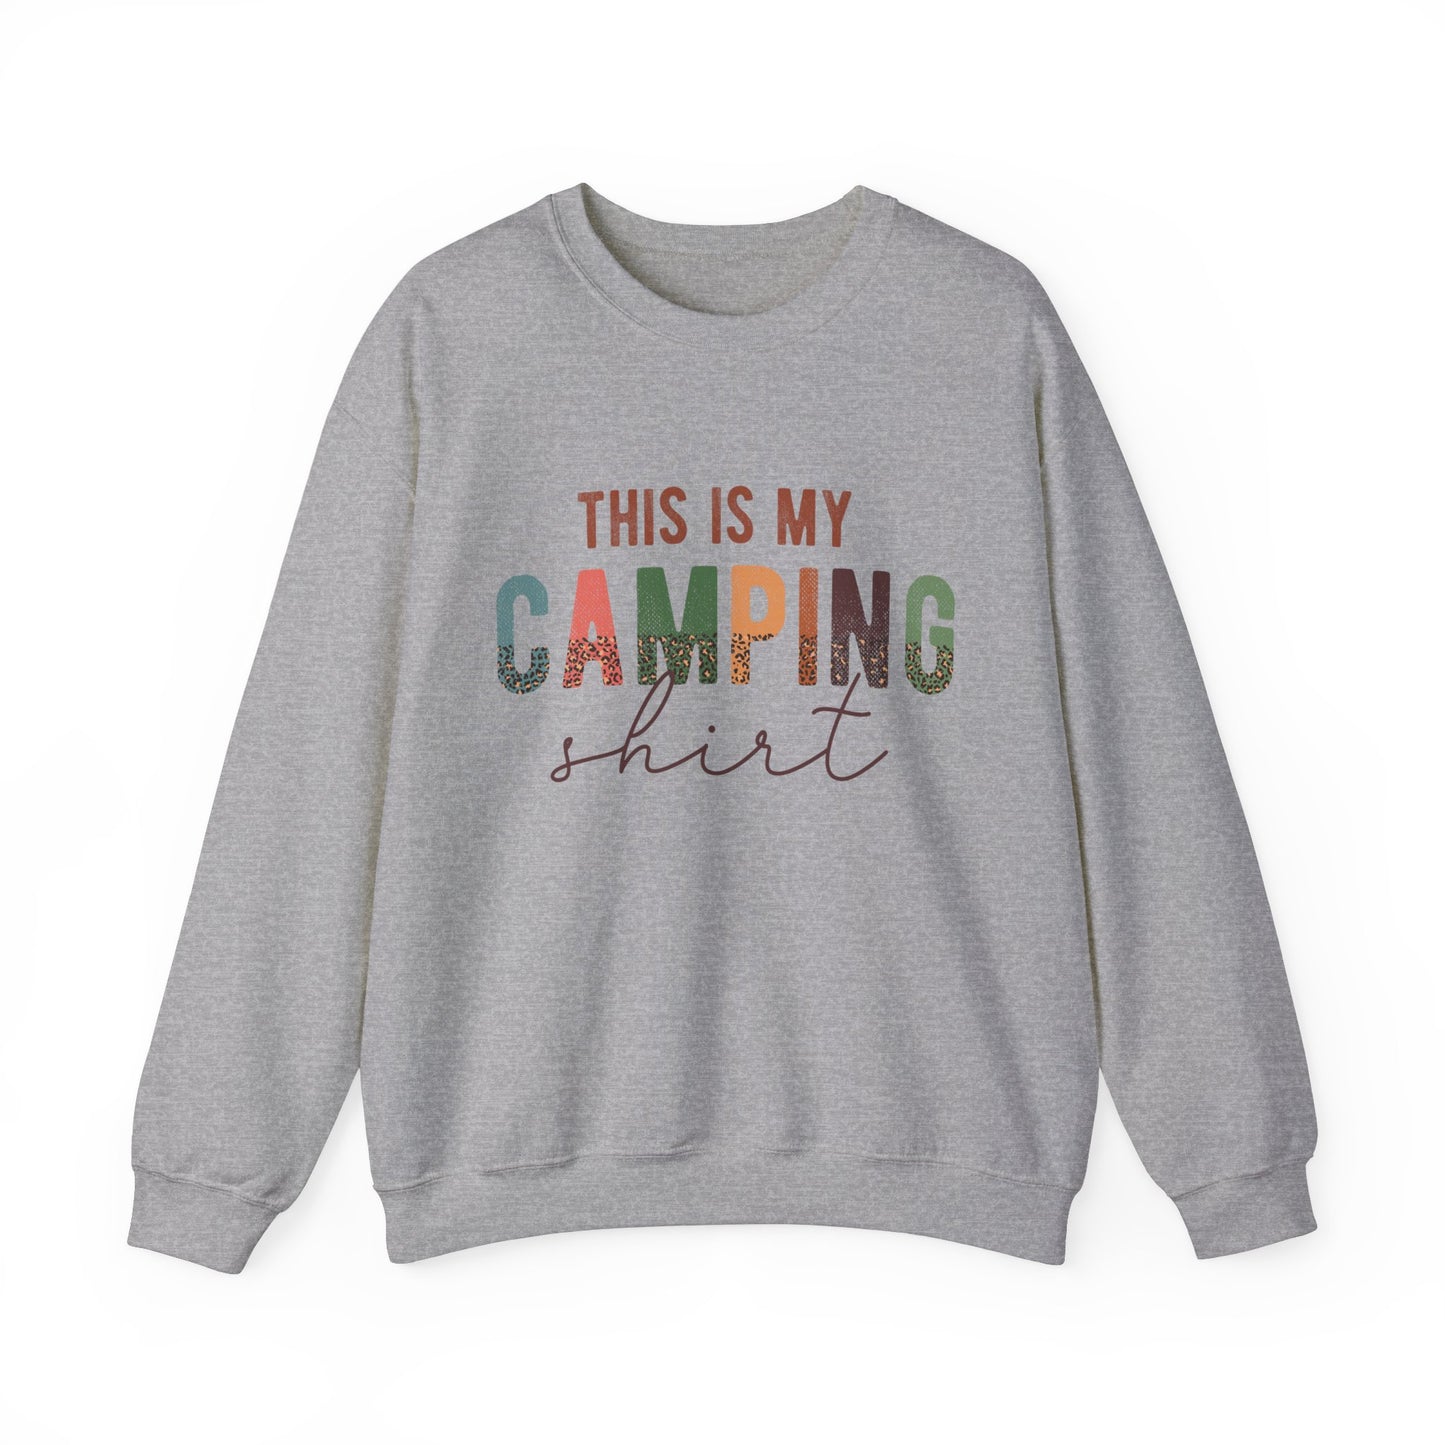 This is my camping shirt Women's Sweatshirt